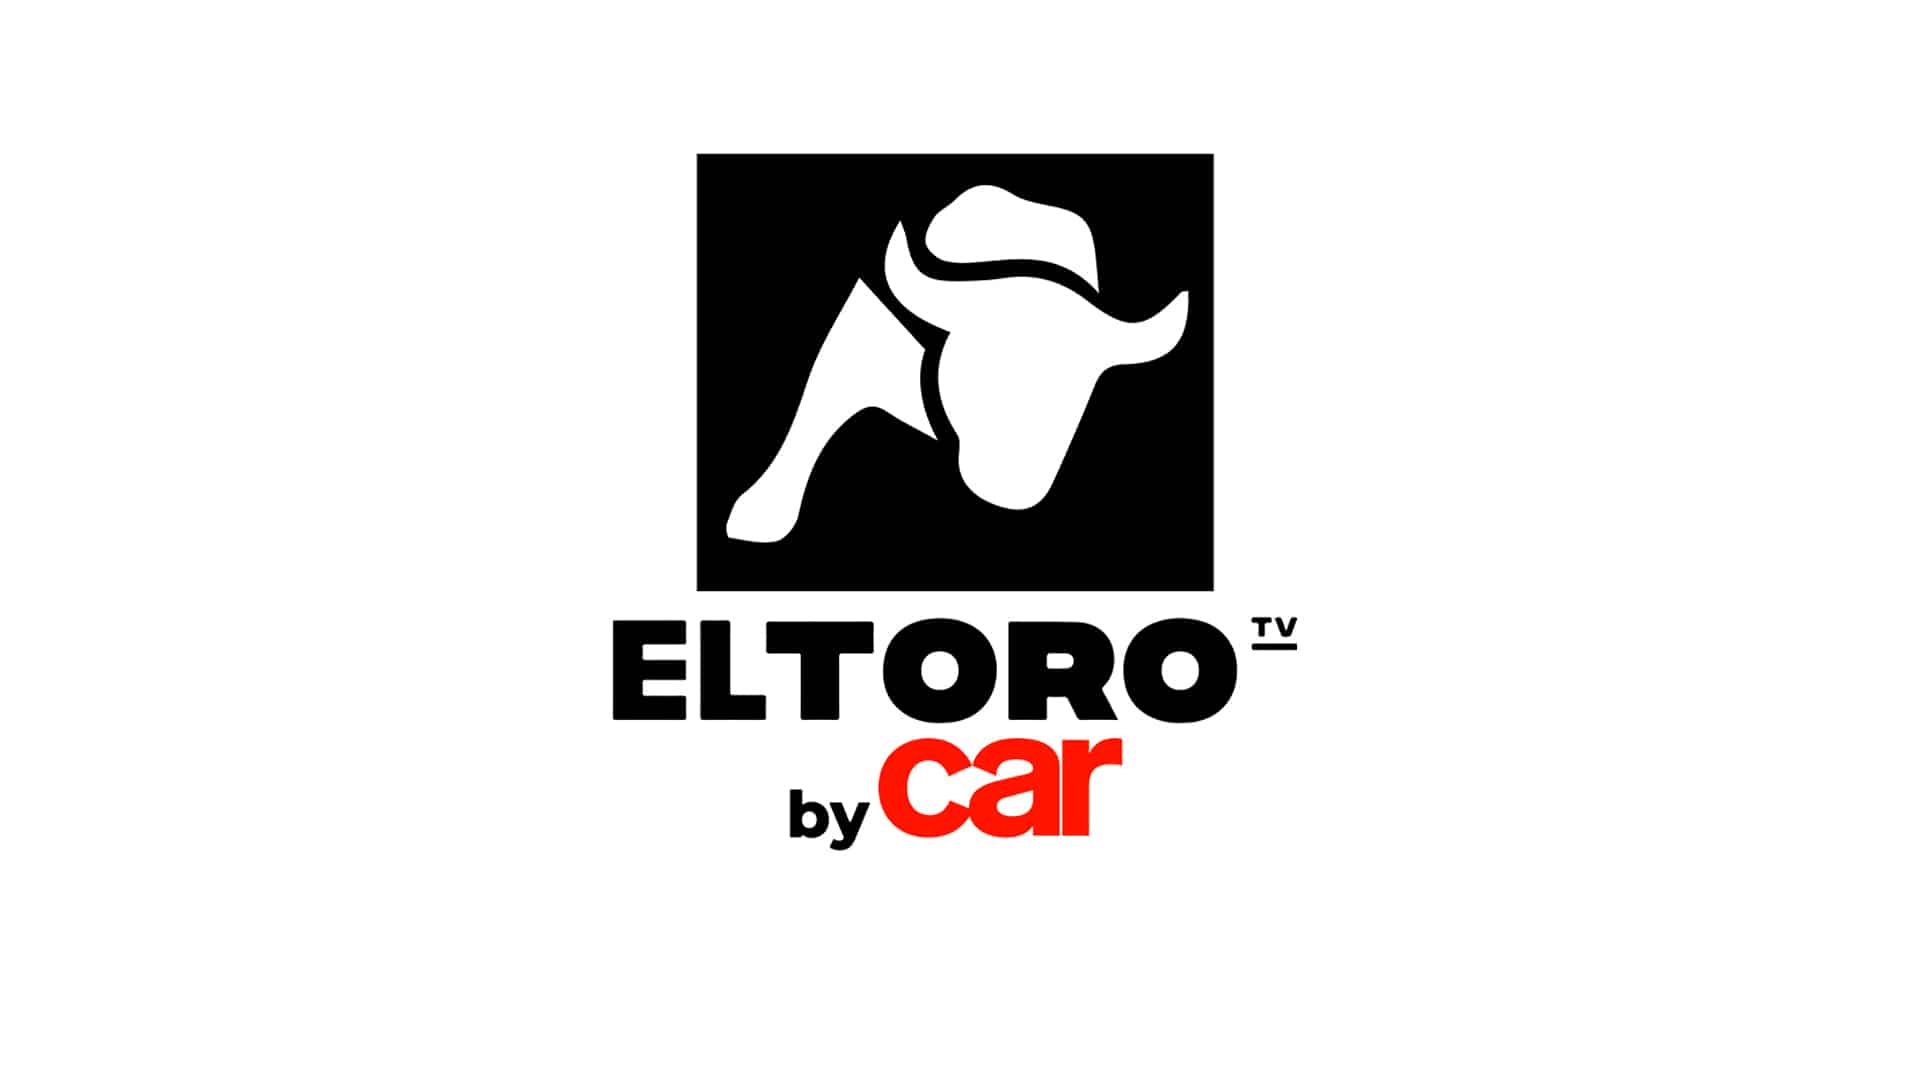 EL TORO BY CAR